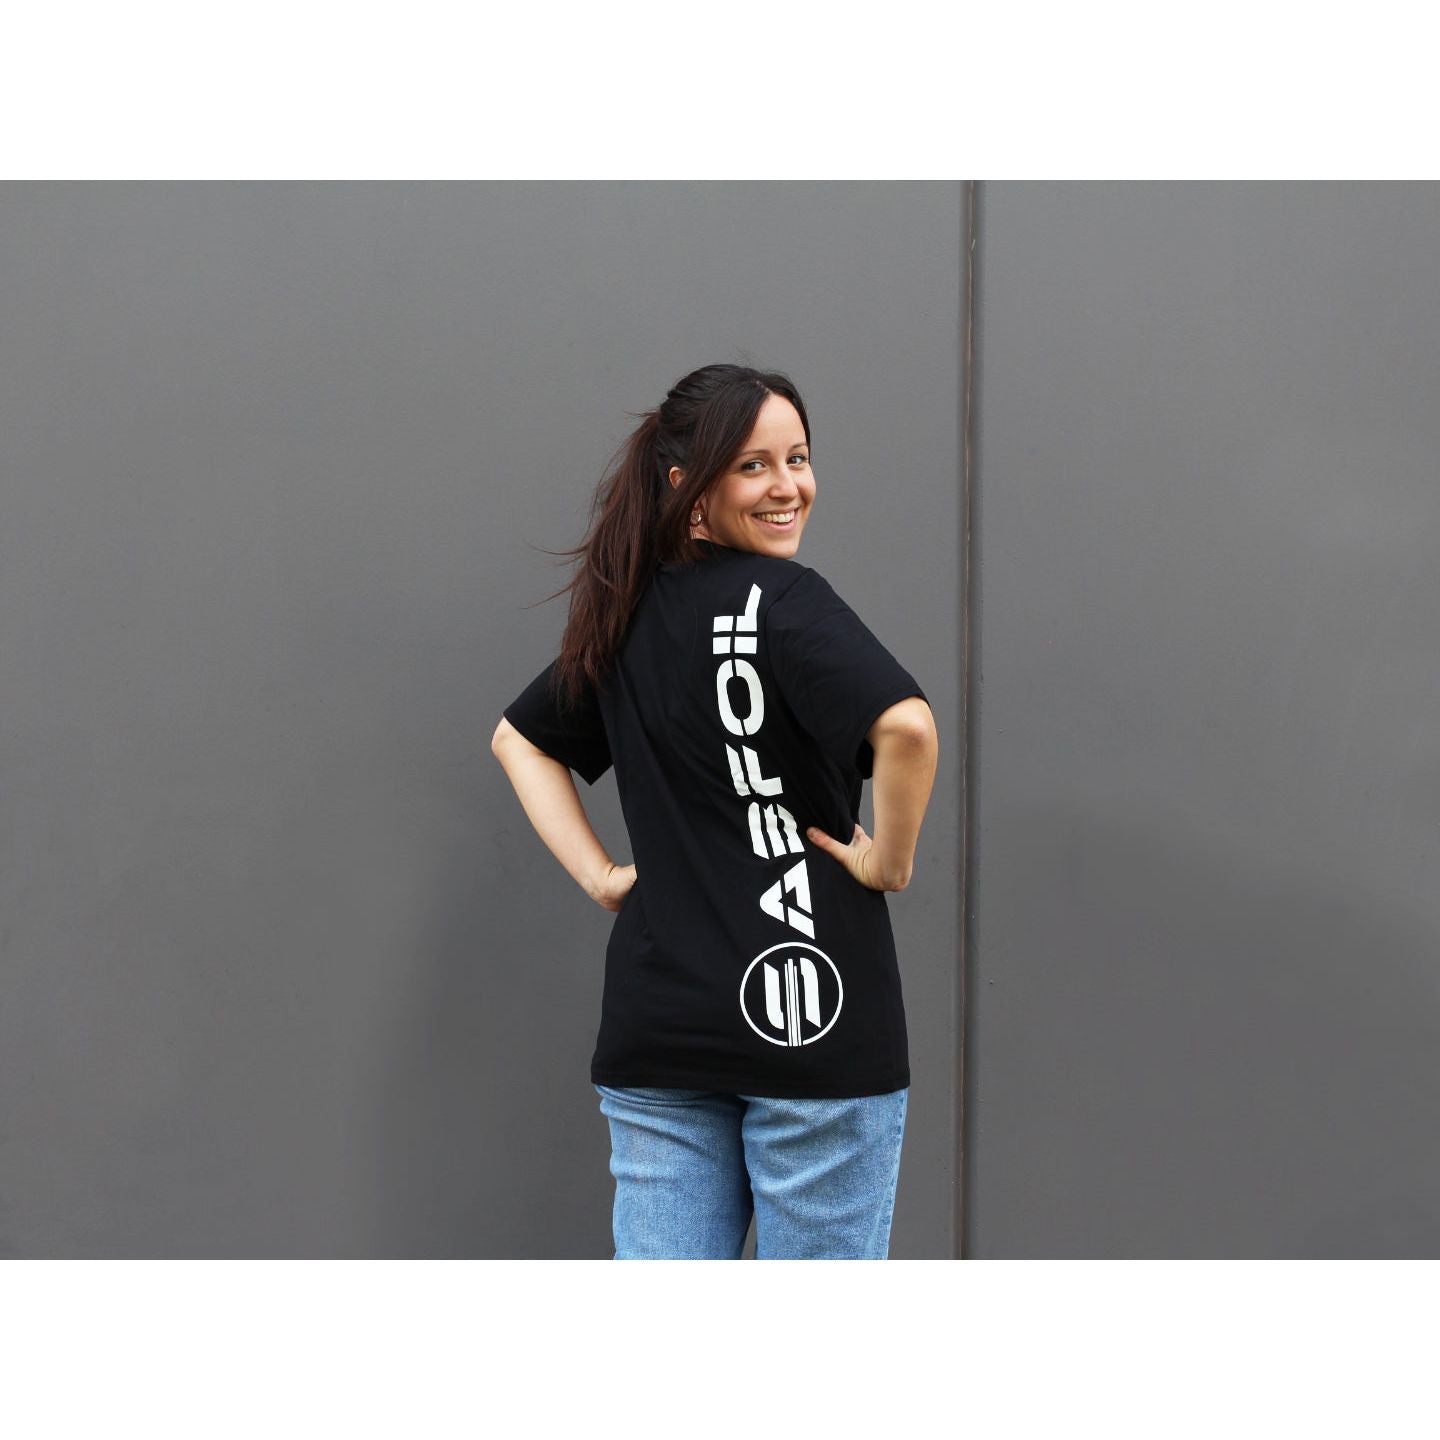 Black Sabfoil T-shirt - size XL